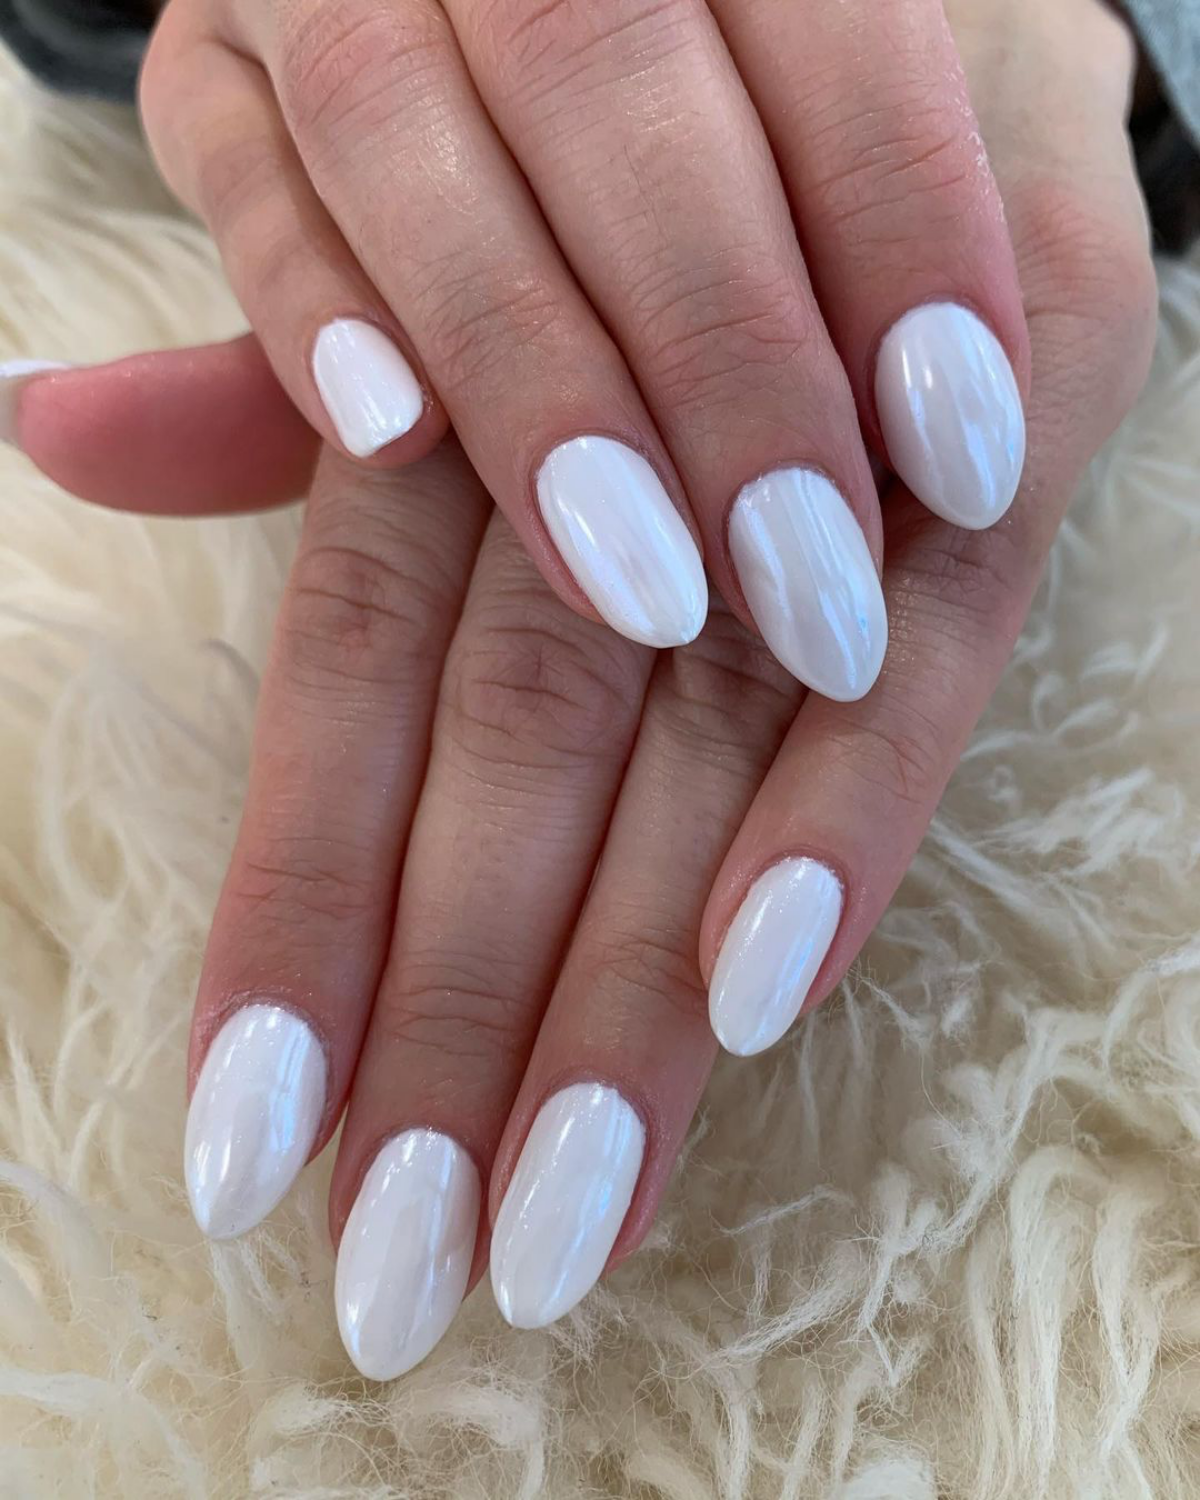 crisp white nails